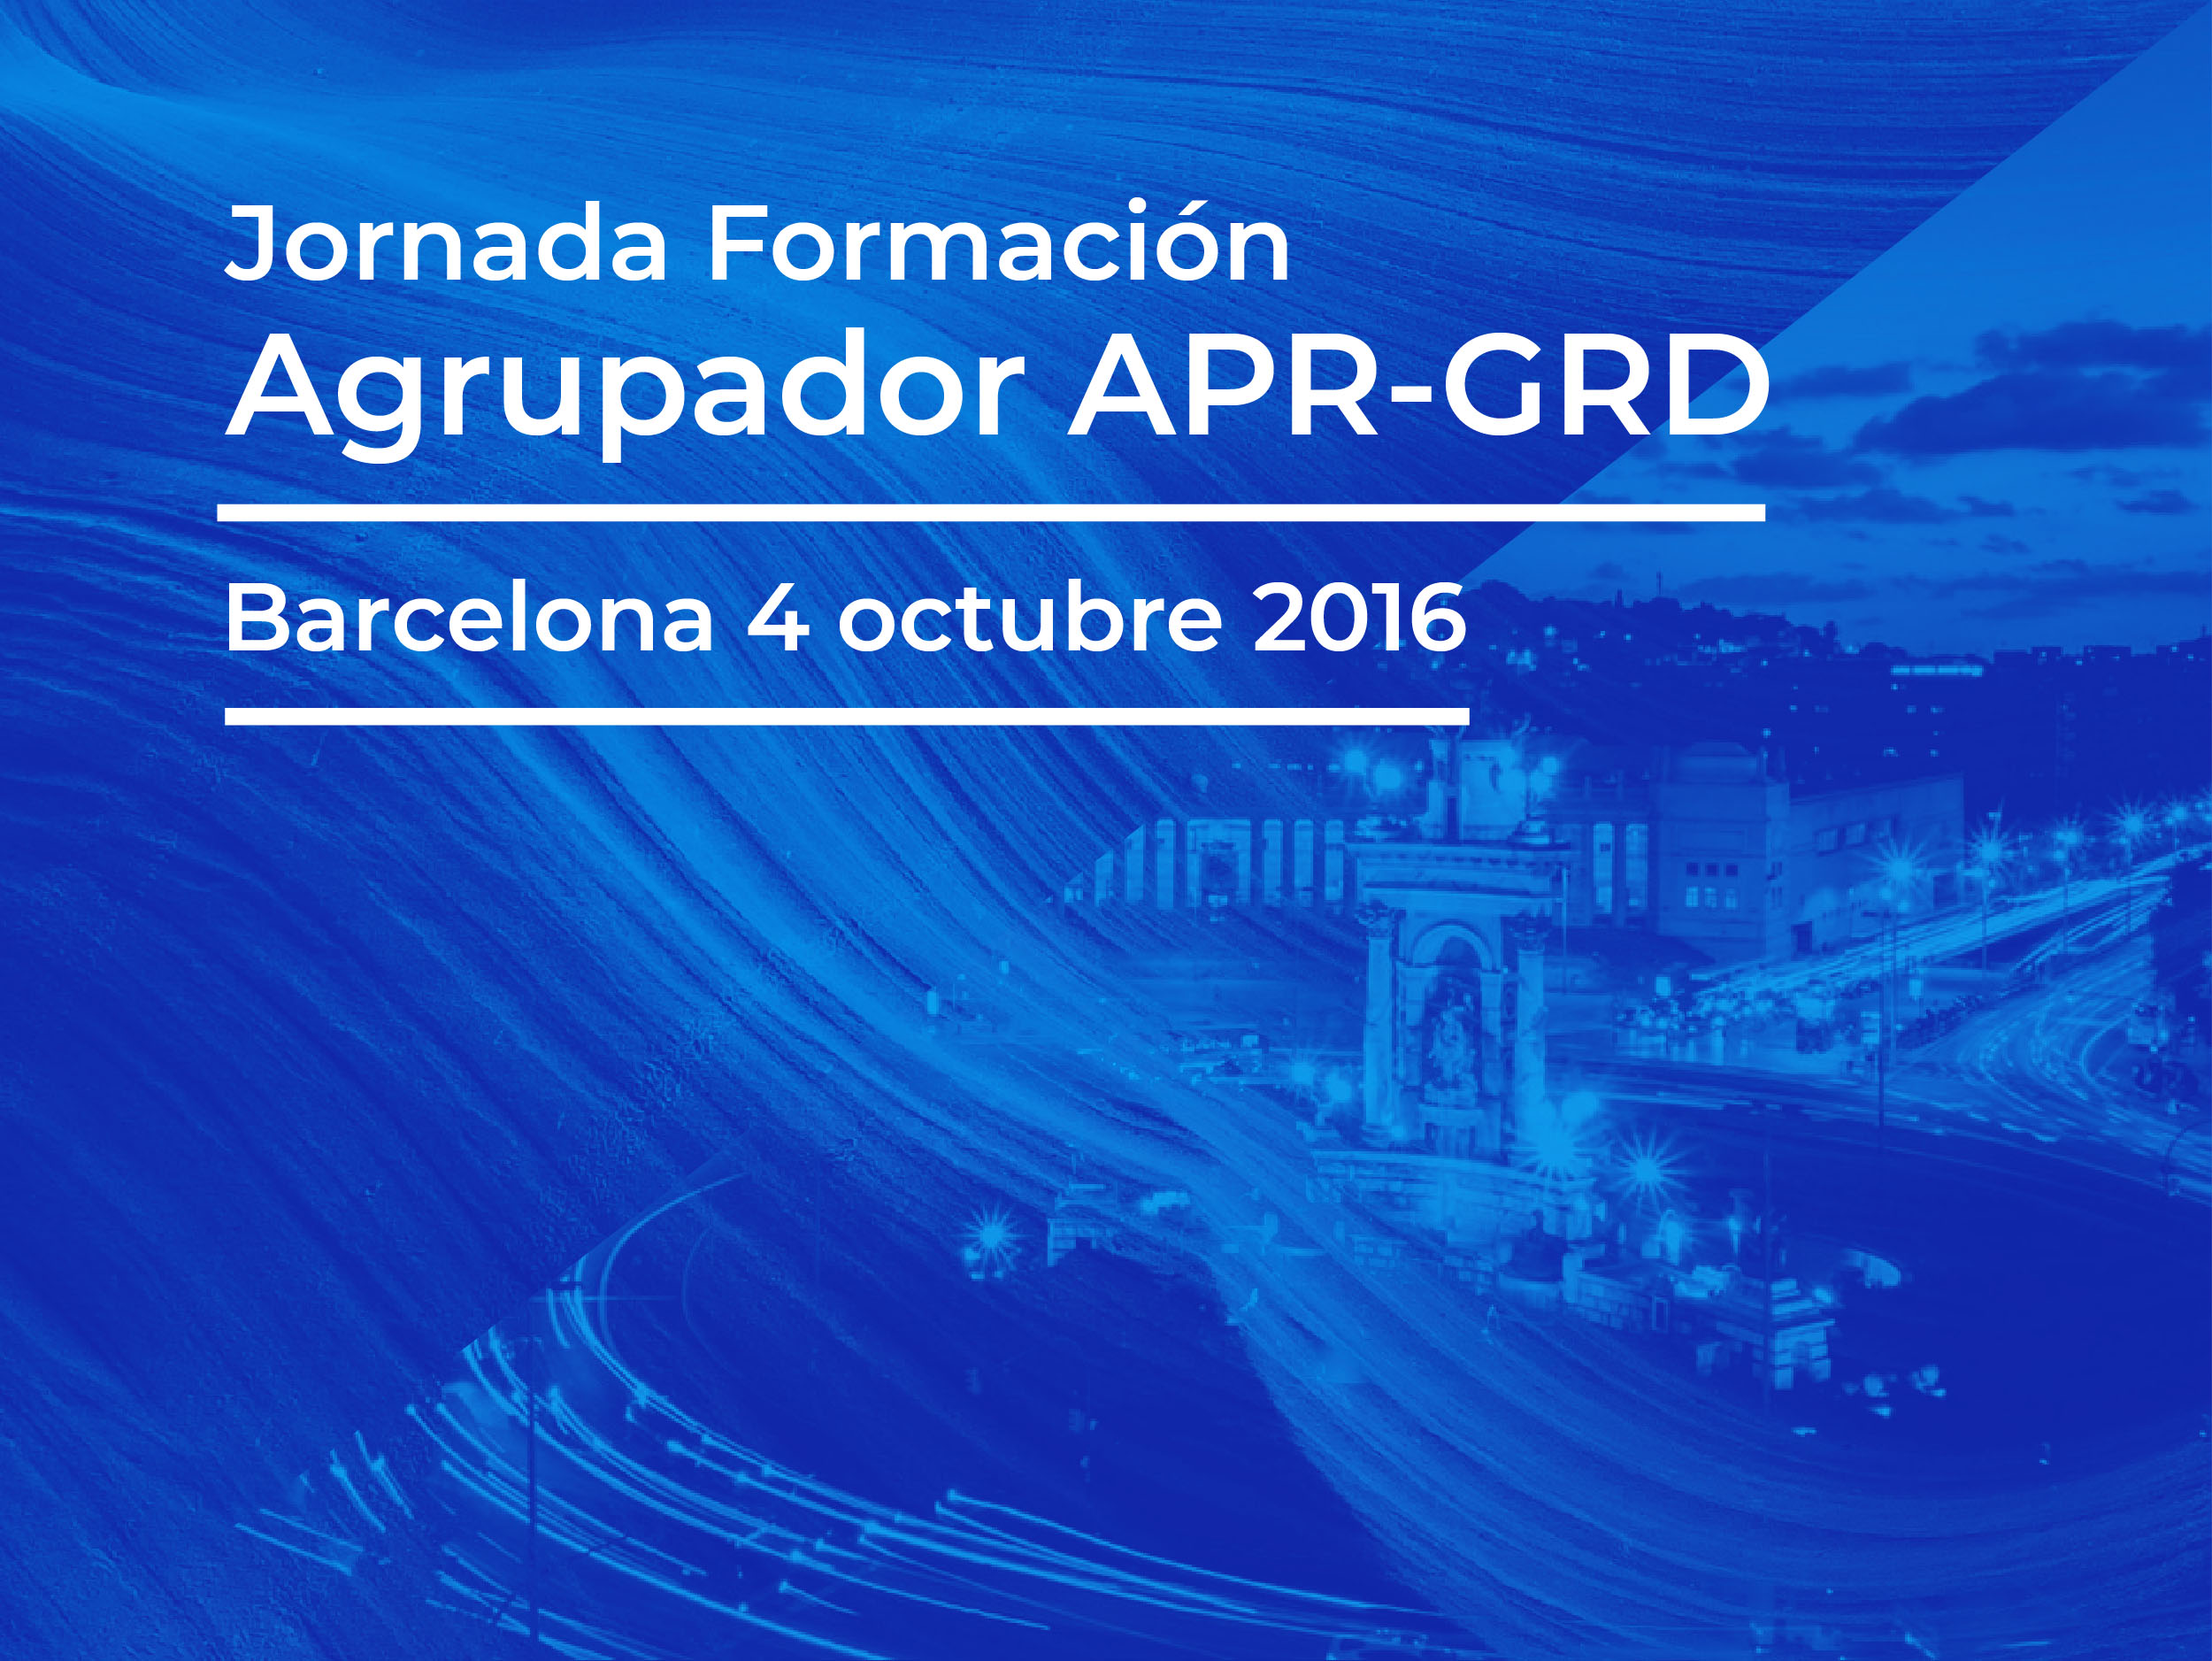 Formación APR-GRD Barcelona